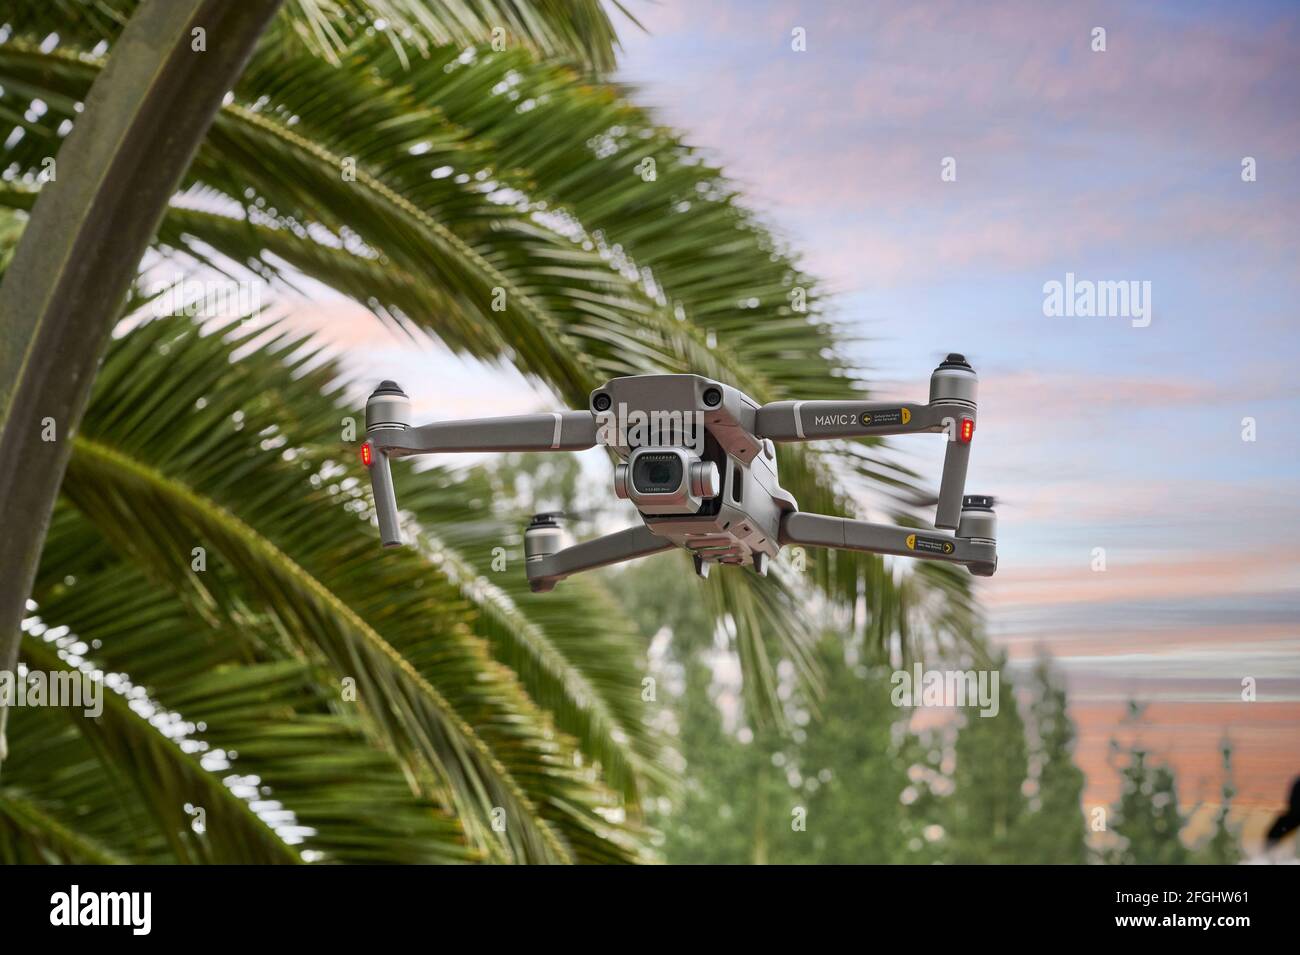 Drohne Mavic 2 im Flug Stockfoto